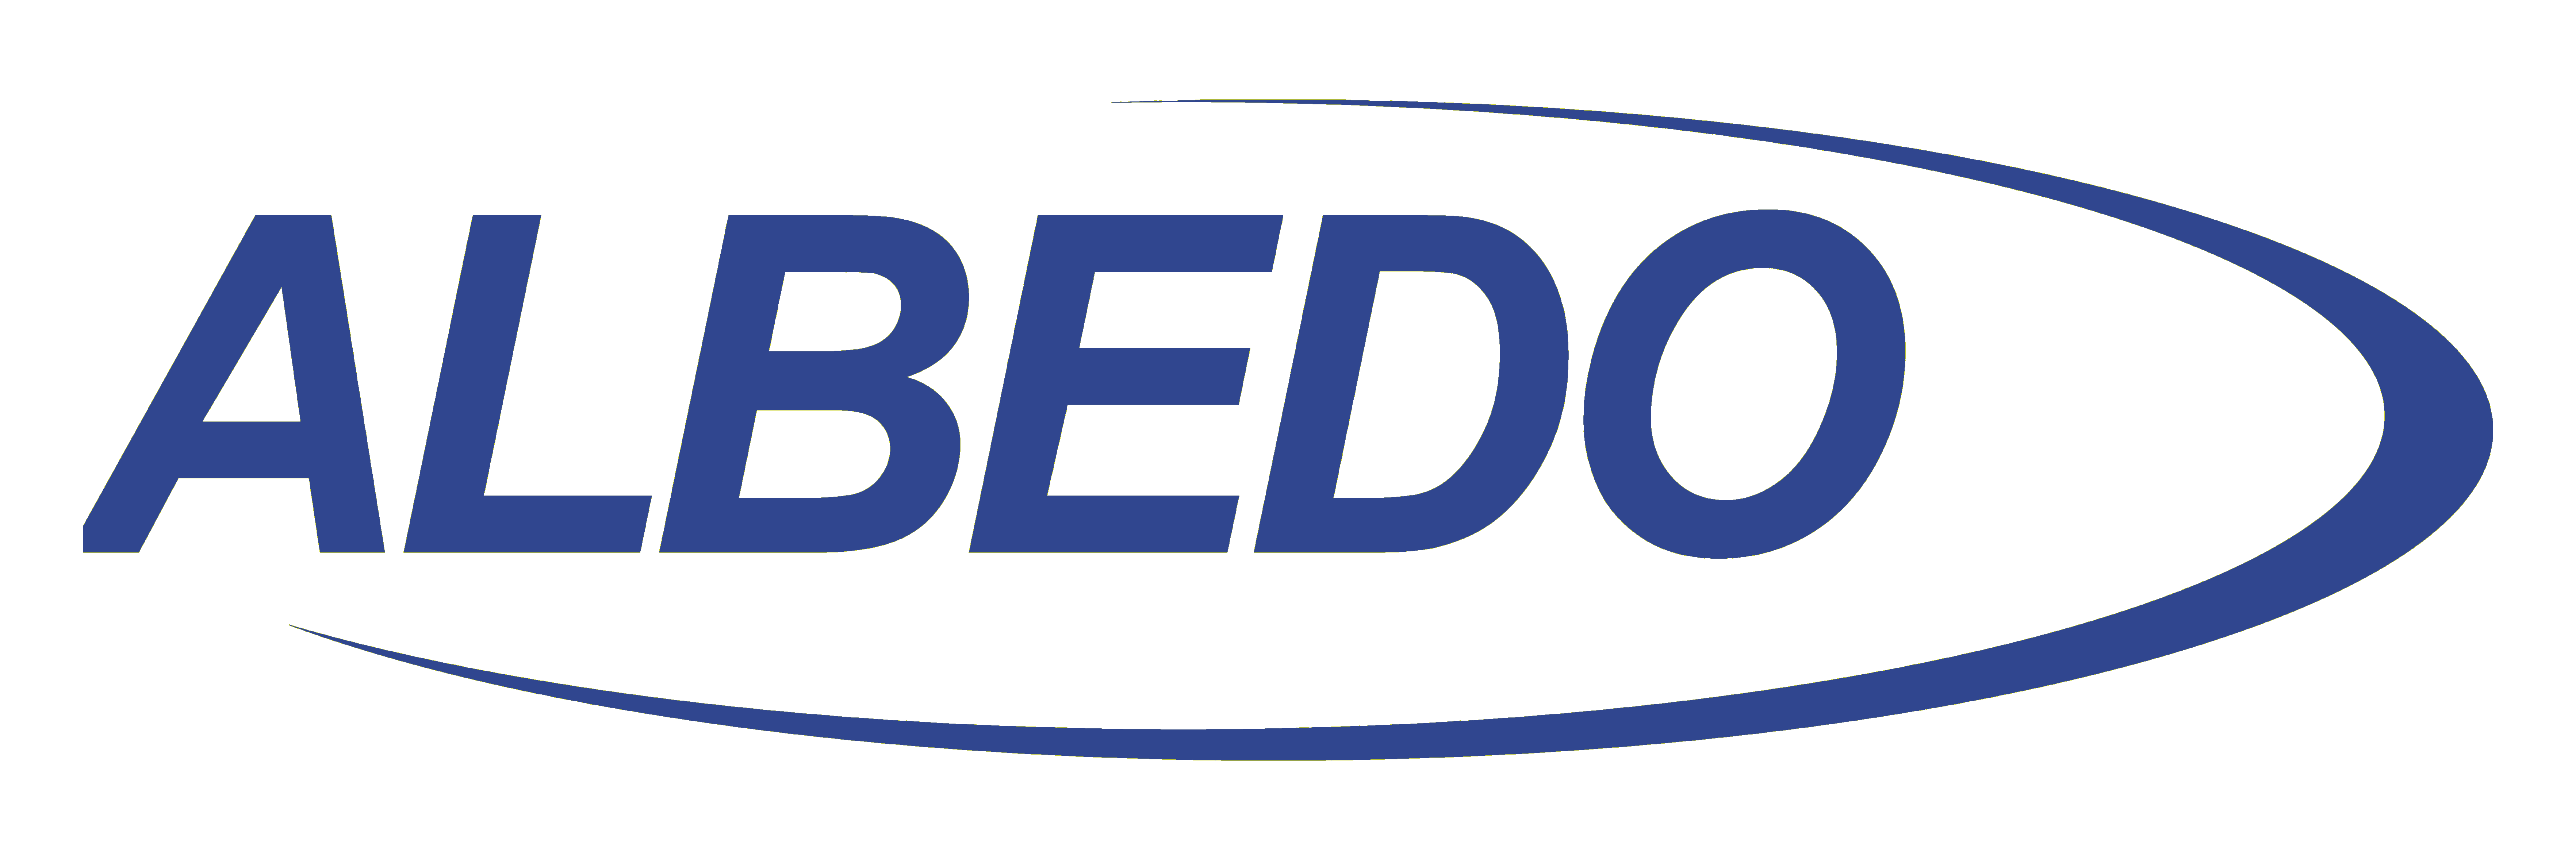 ALBEDO Telecom - Download Files